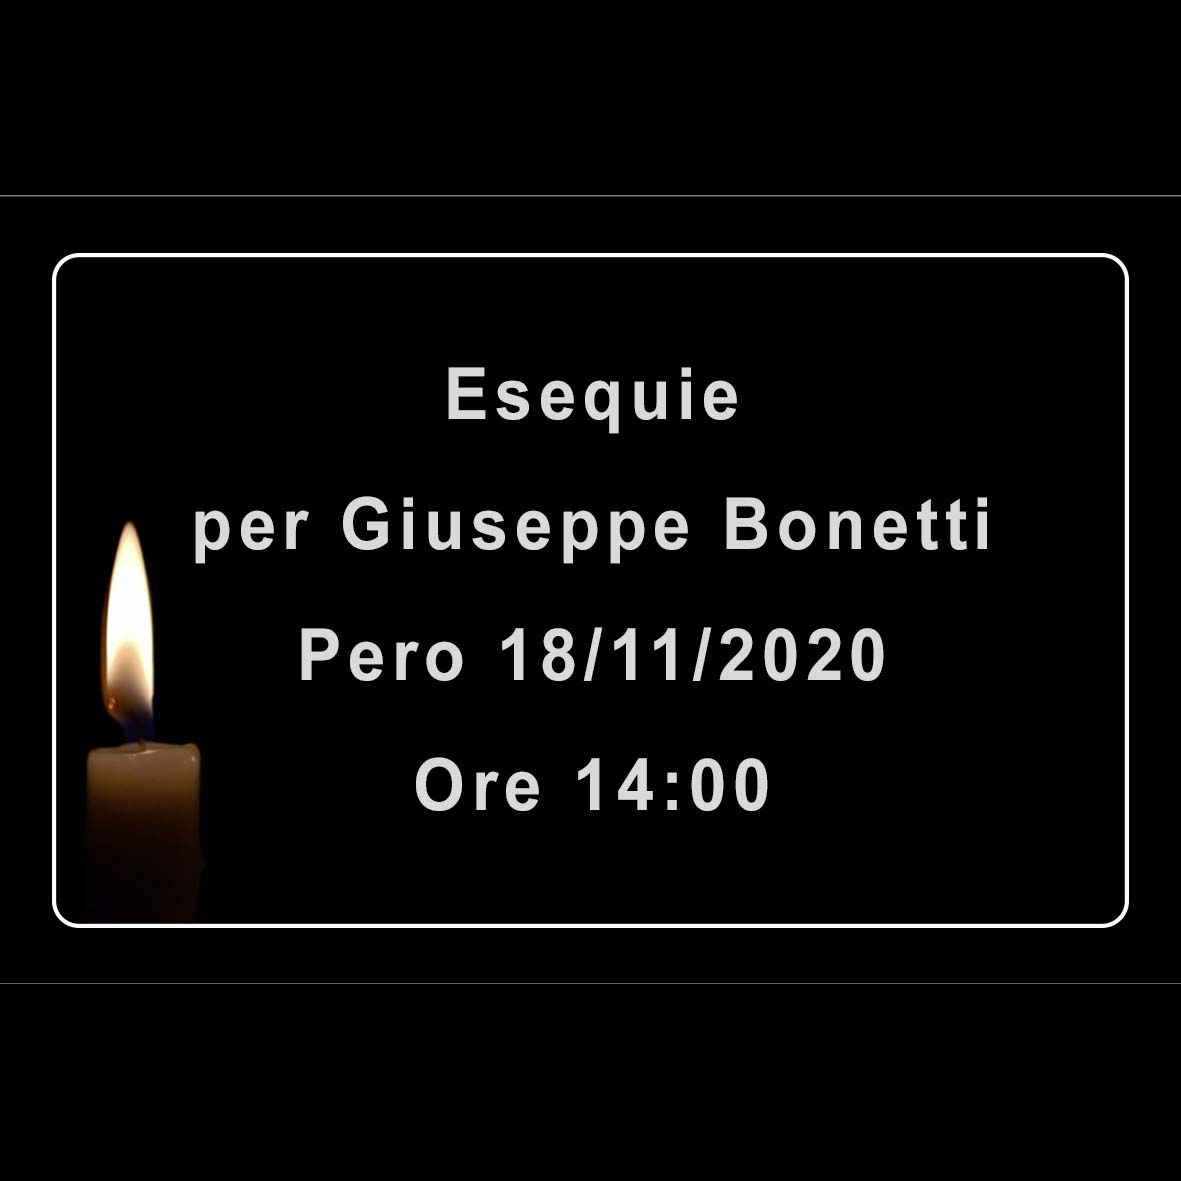 Esequie per Giuseppe Bonetti